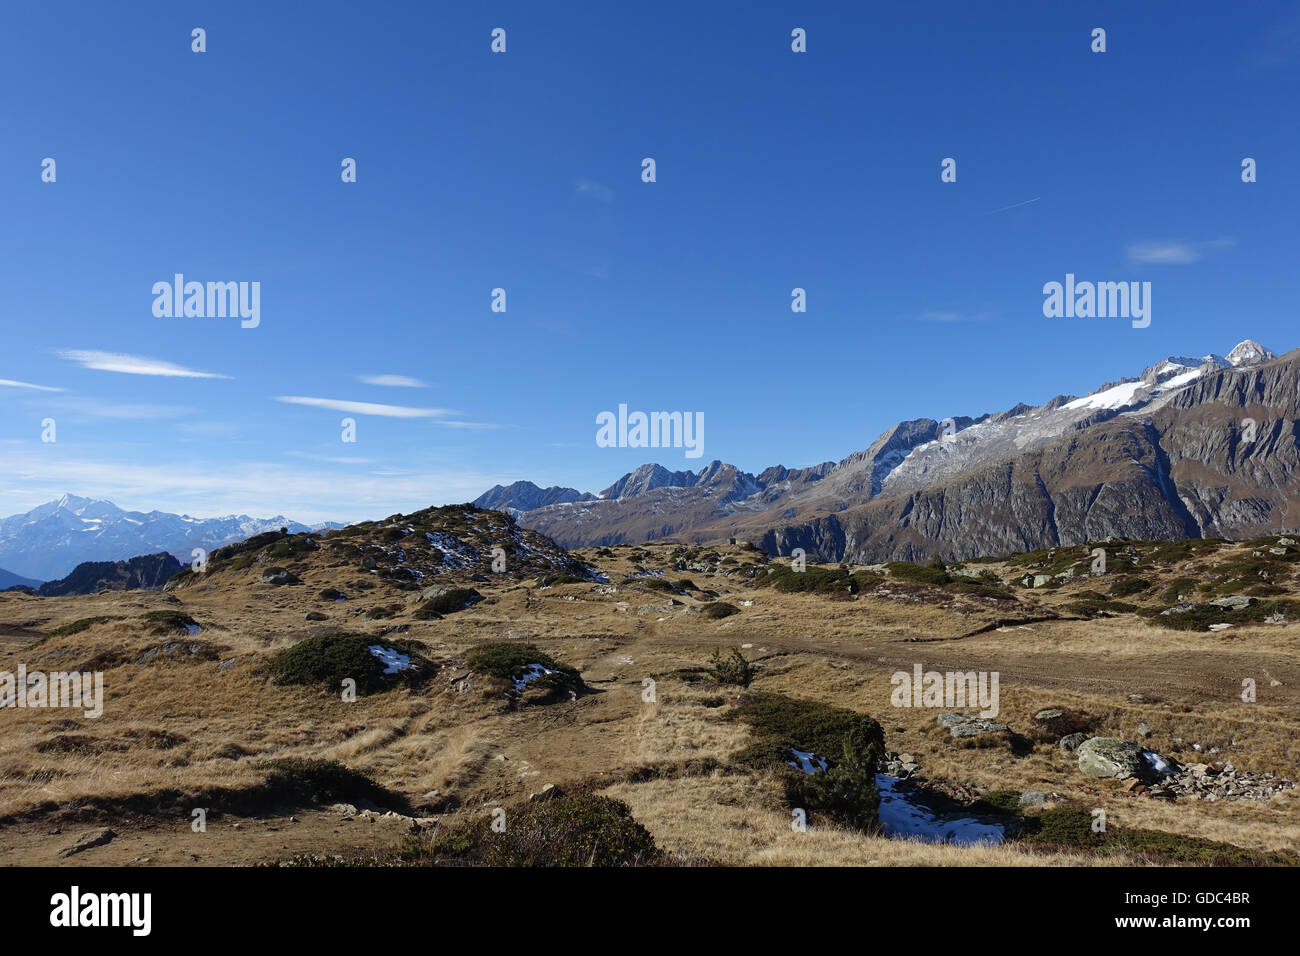 Switzerland,Europe,Valais,Bettmeralp,mountains,autumn Stock Photo